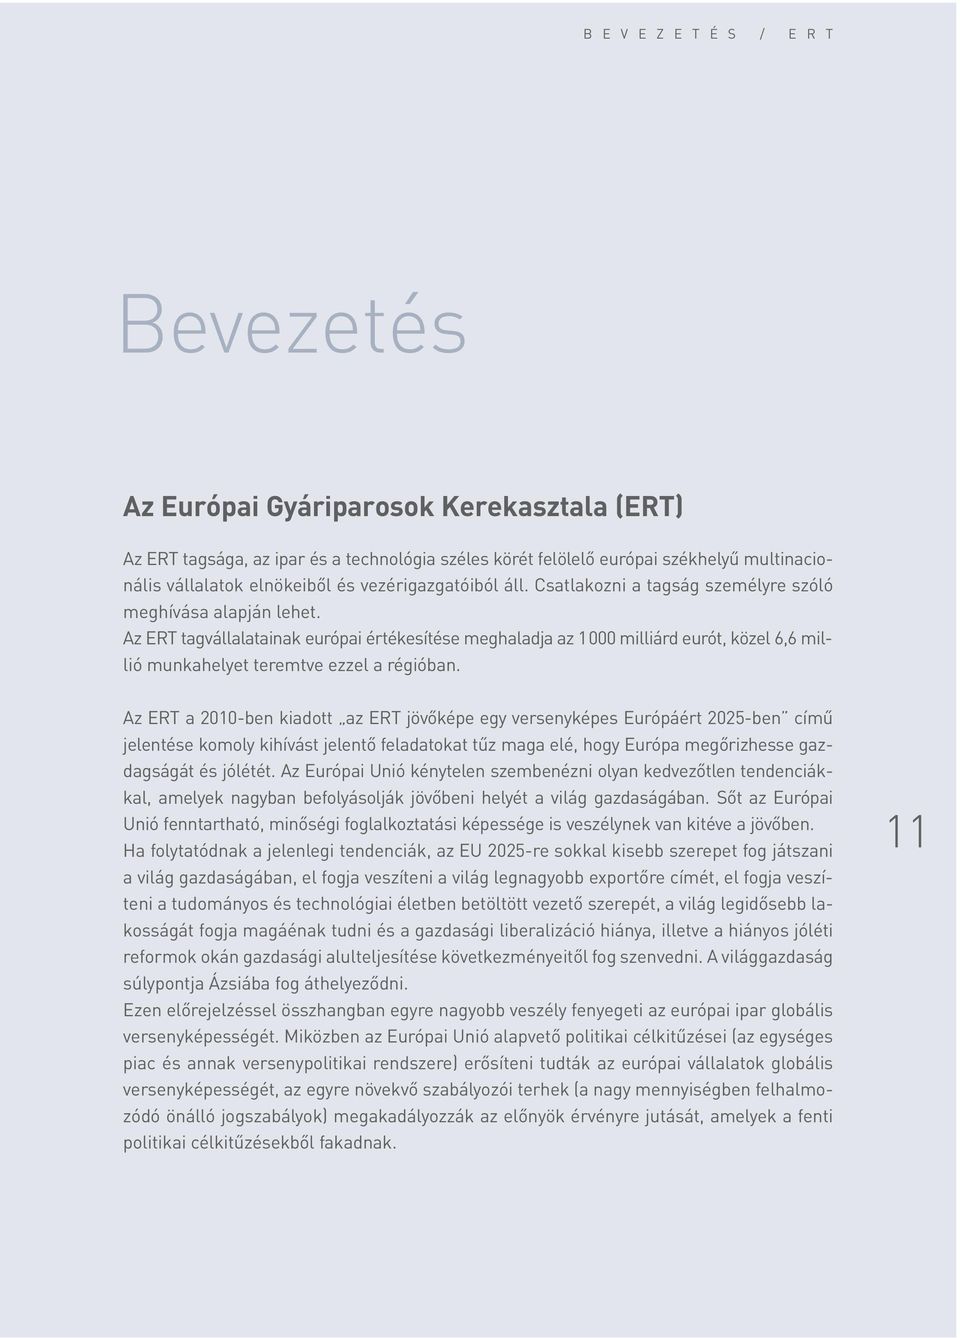 Az ERT tagvállalatainak európai értékesítése meghaladja az 1000 milliárd eurót, közel 6,6 millió munkahelyet teremtve ezzel a régióban.